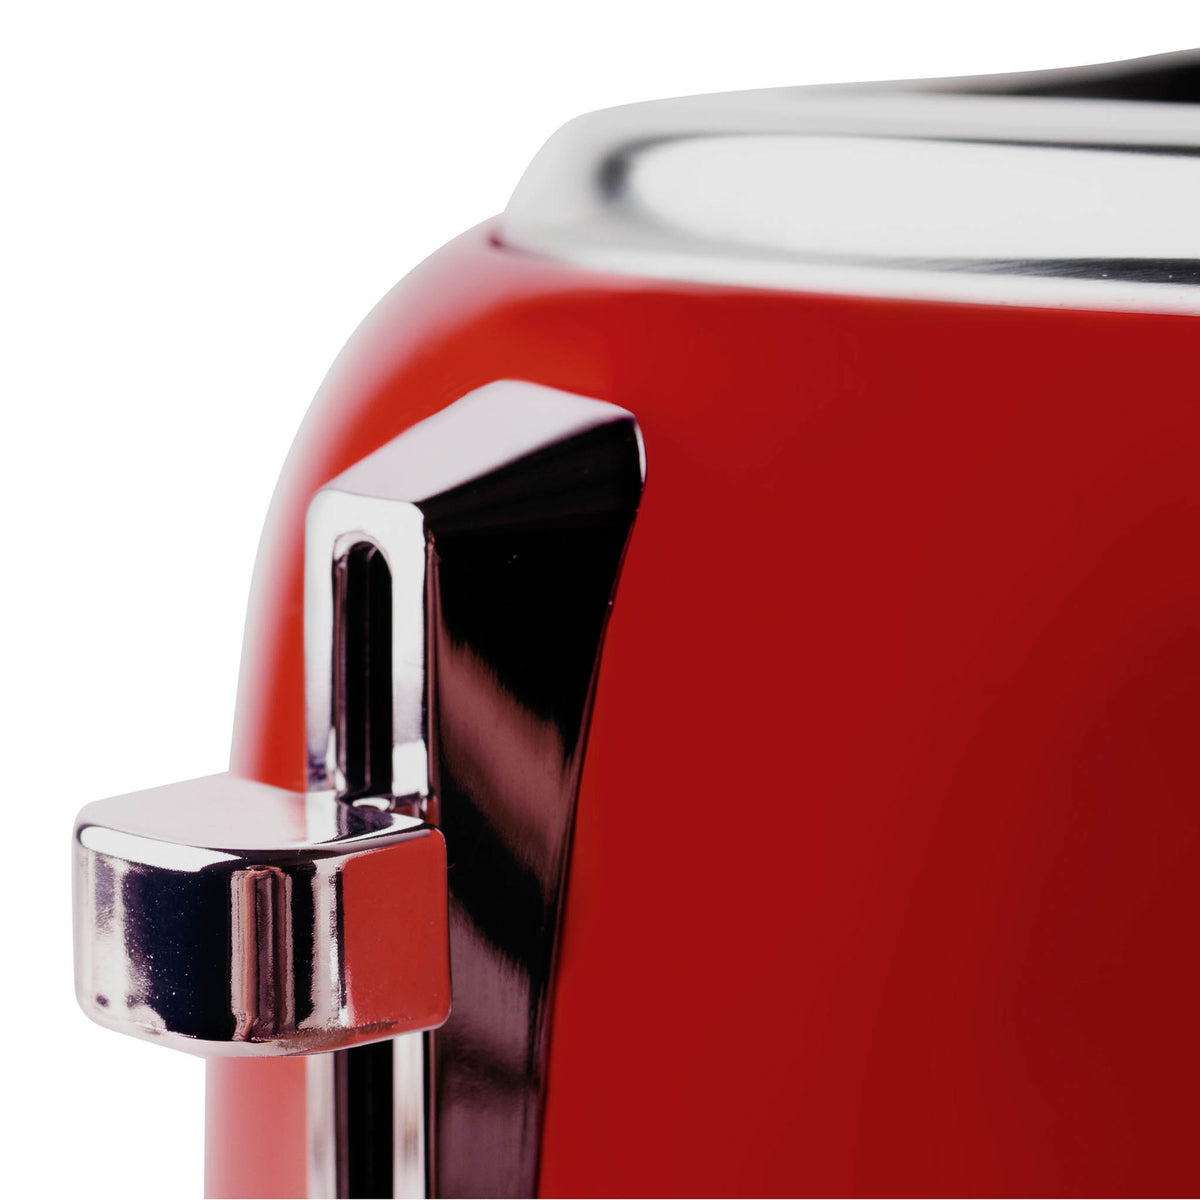 GZMR 4-Slice Red 1500-Watt Toaster at